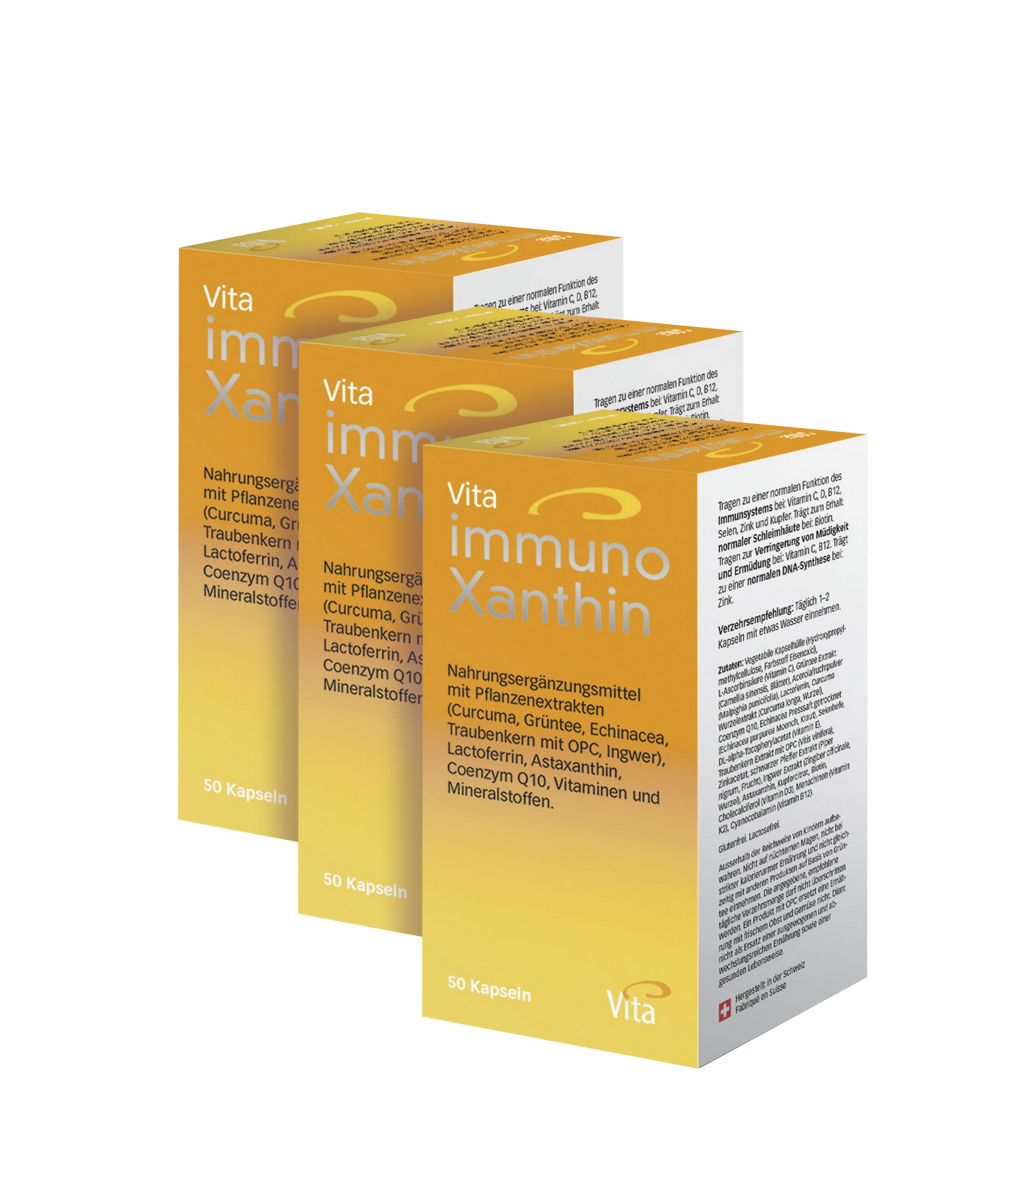 Vita immunoXanthin Triple pack